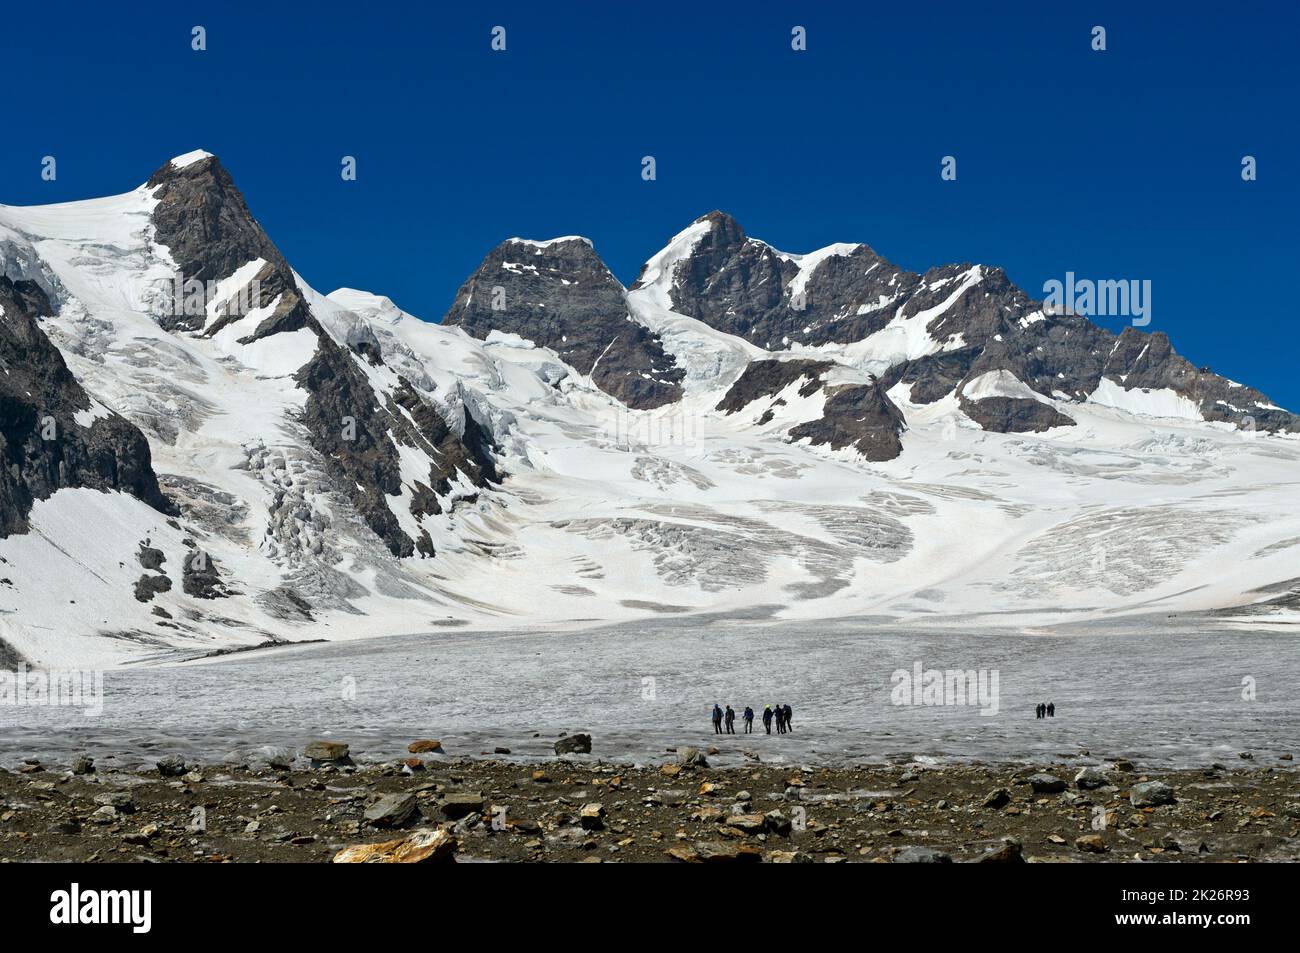 Un groupe d'alpinistes sur le champ de glace de la Jungfraufirn, le sommet de la Jungfrau derrière, les Alpes suisses Jungfrau-Aletsch, classées au patrimoine mondial de l'UNESCO, Grindelwal Banque D'Images